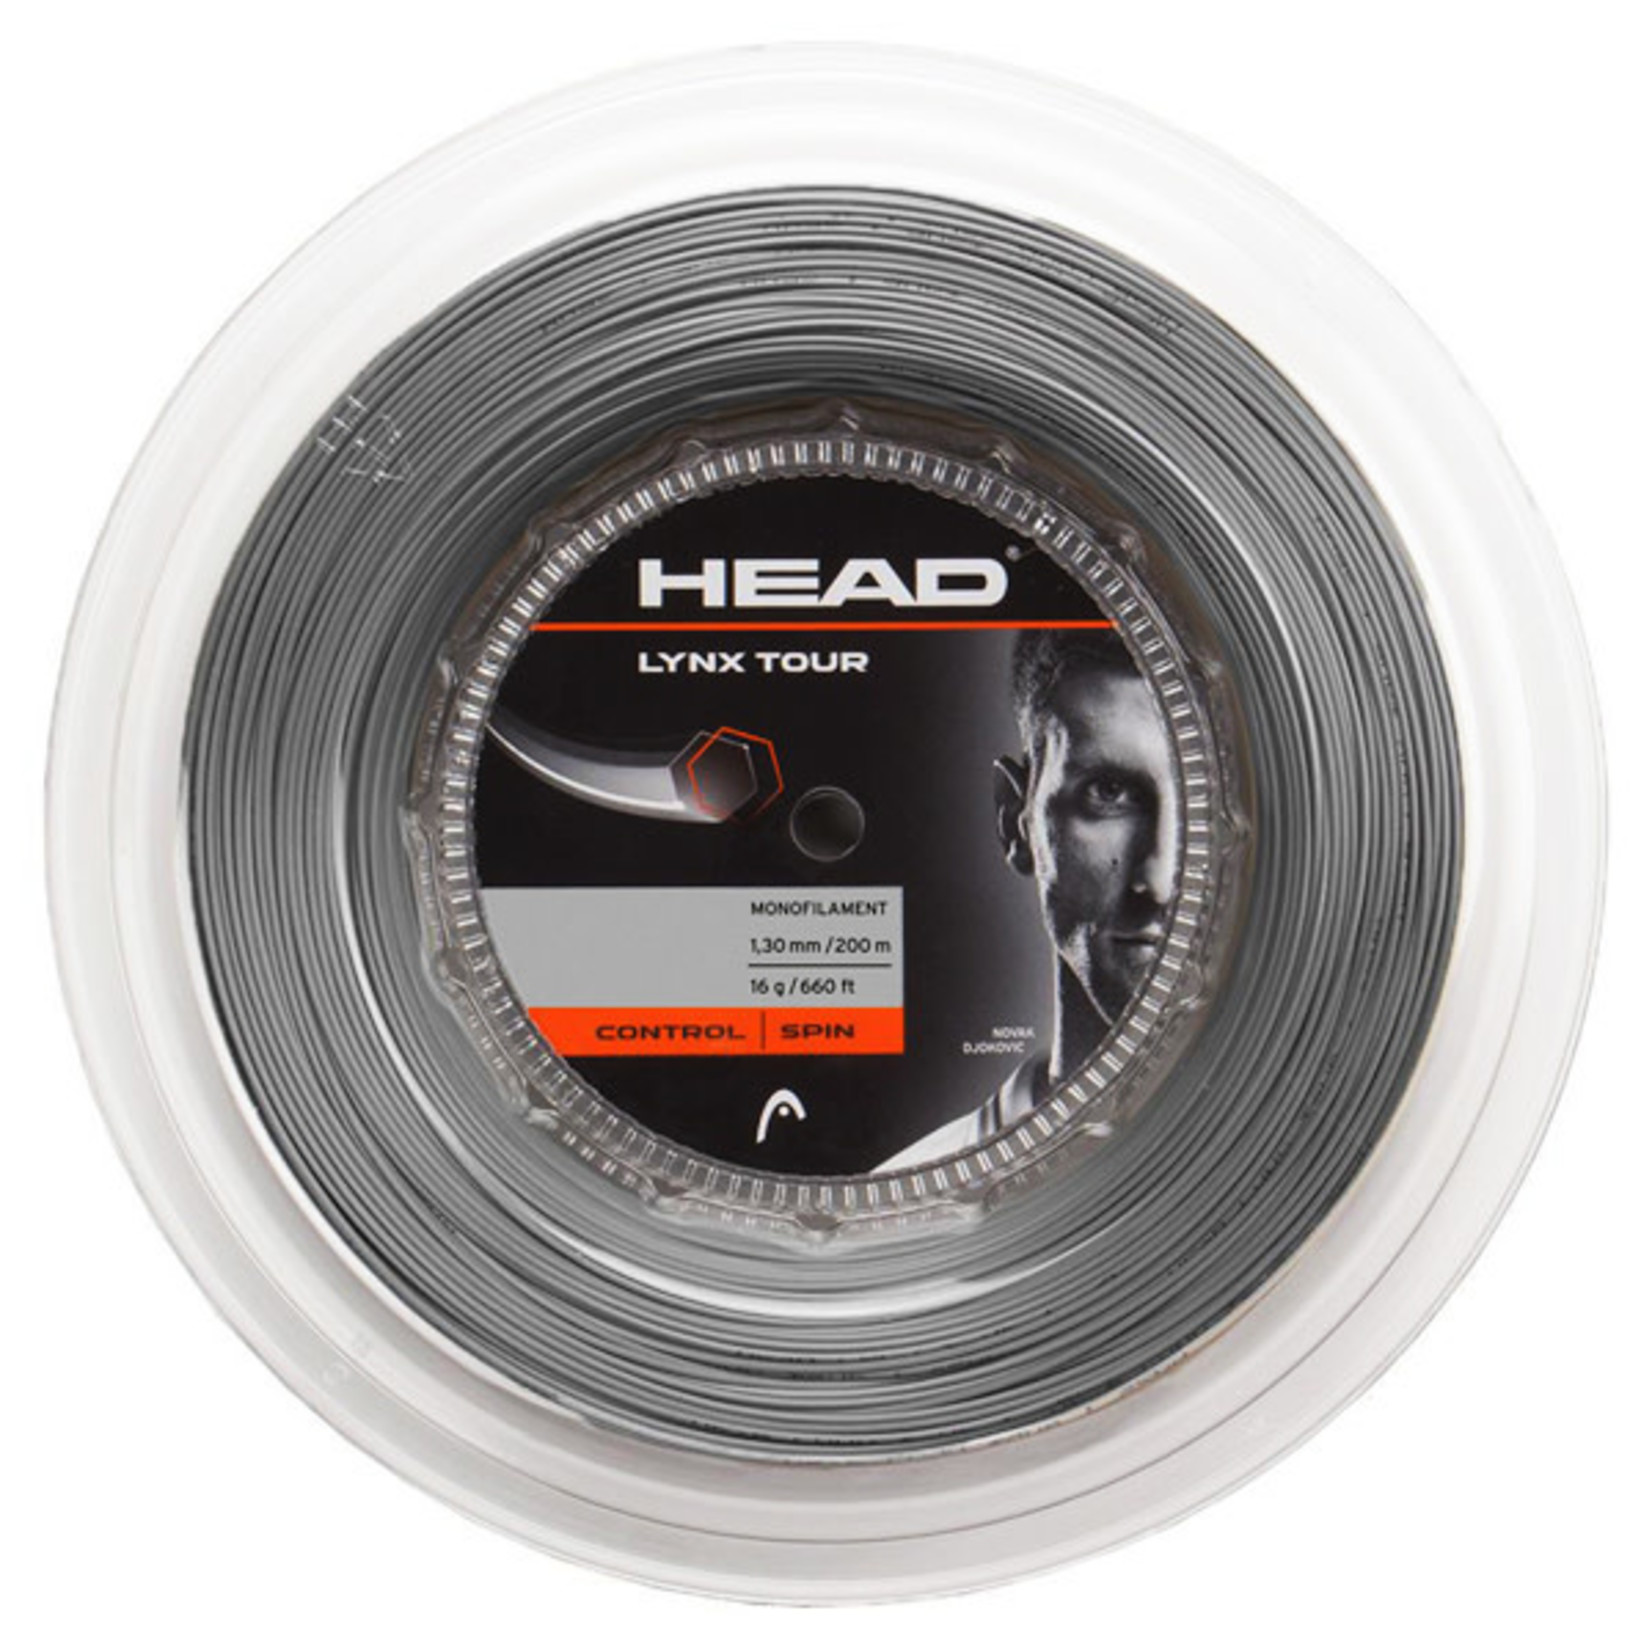 Head Head Lynx Tour Tennis String Reels (200m)